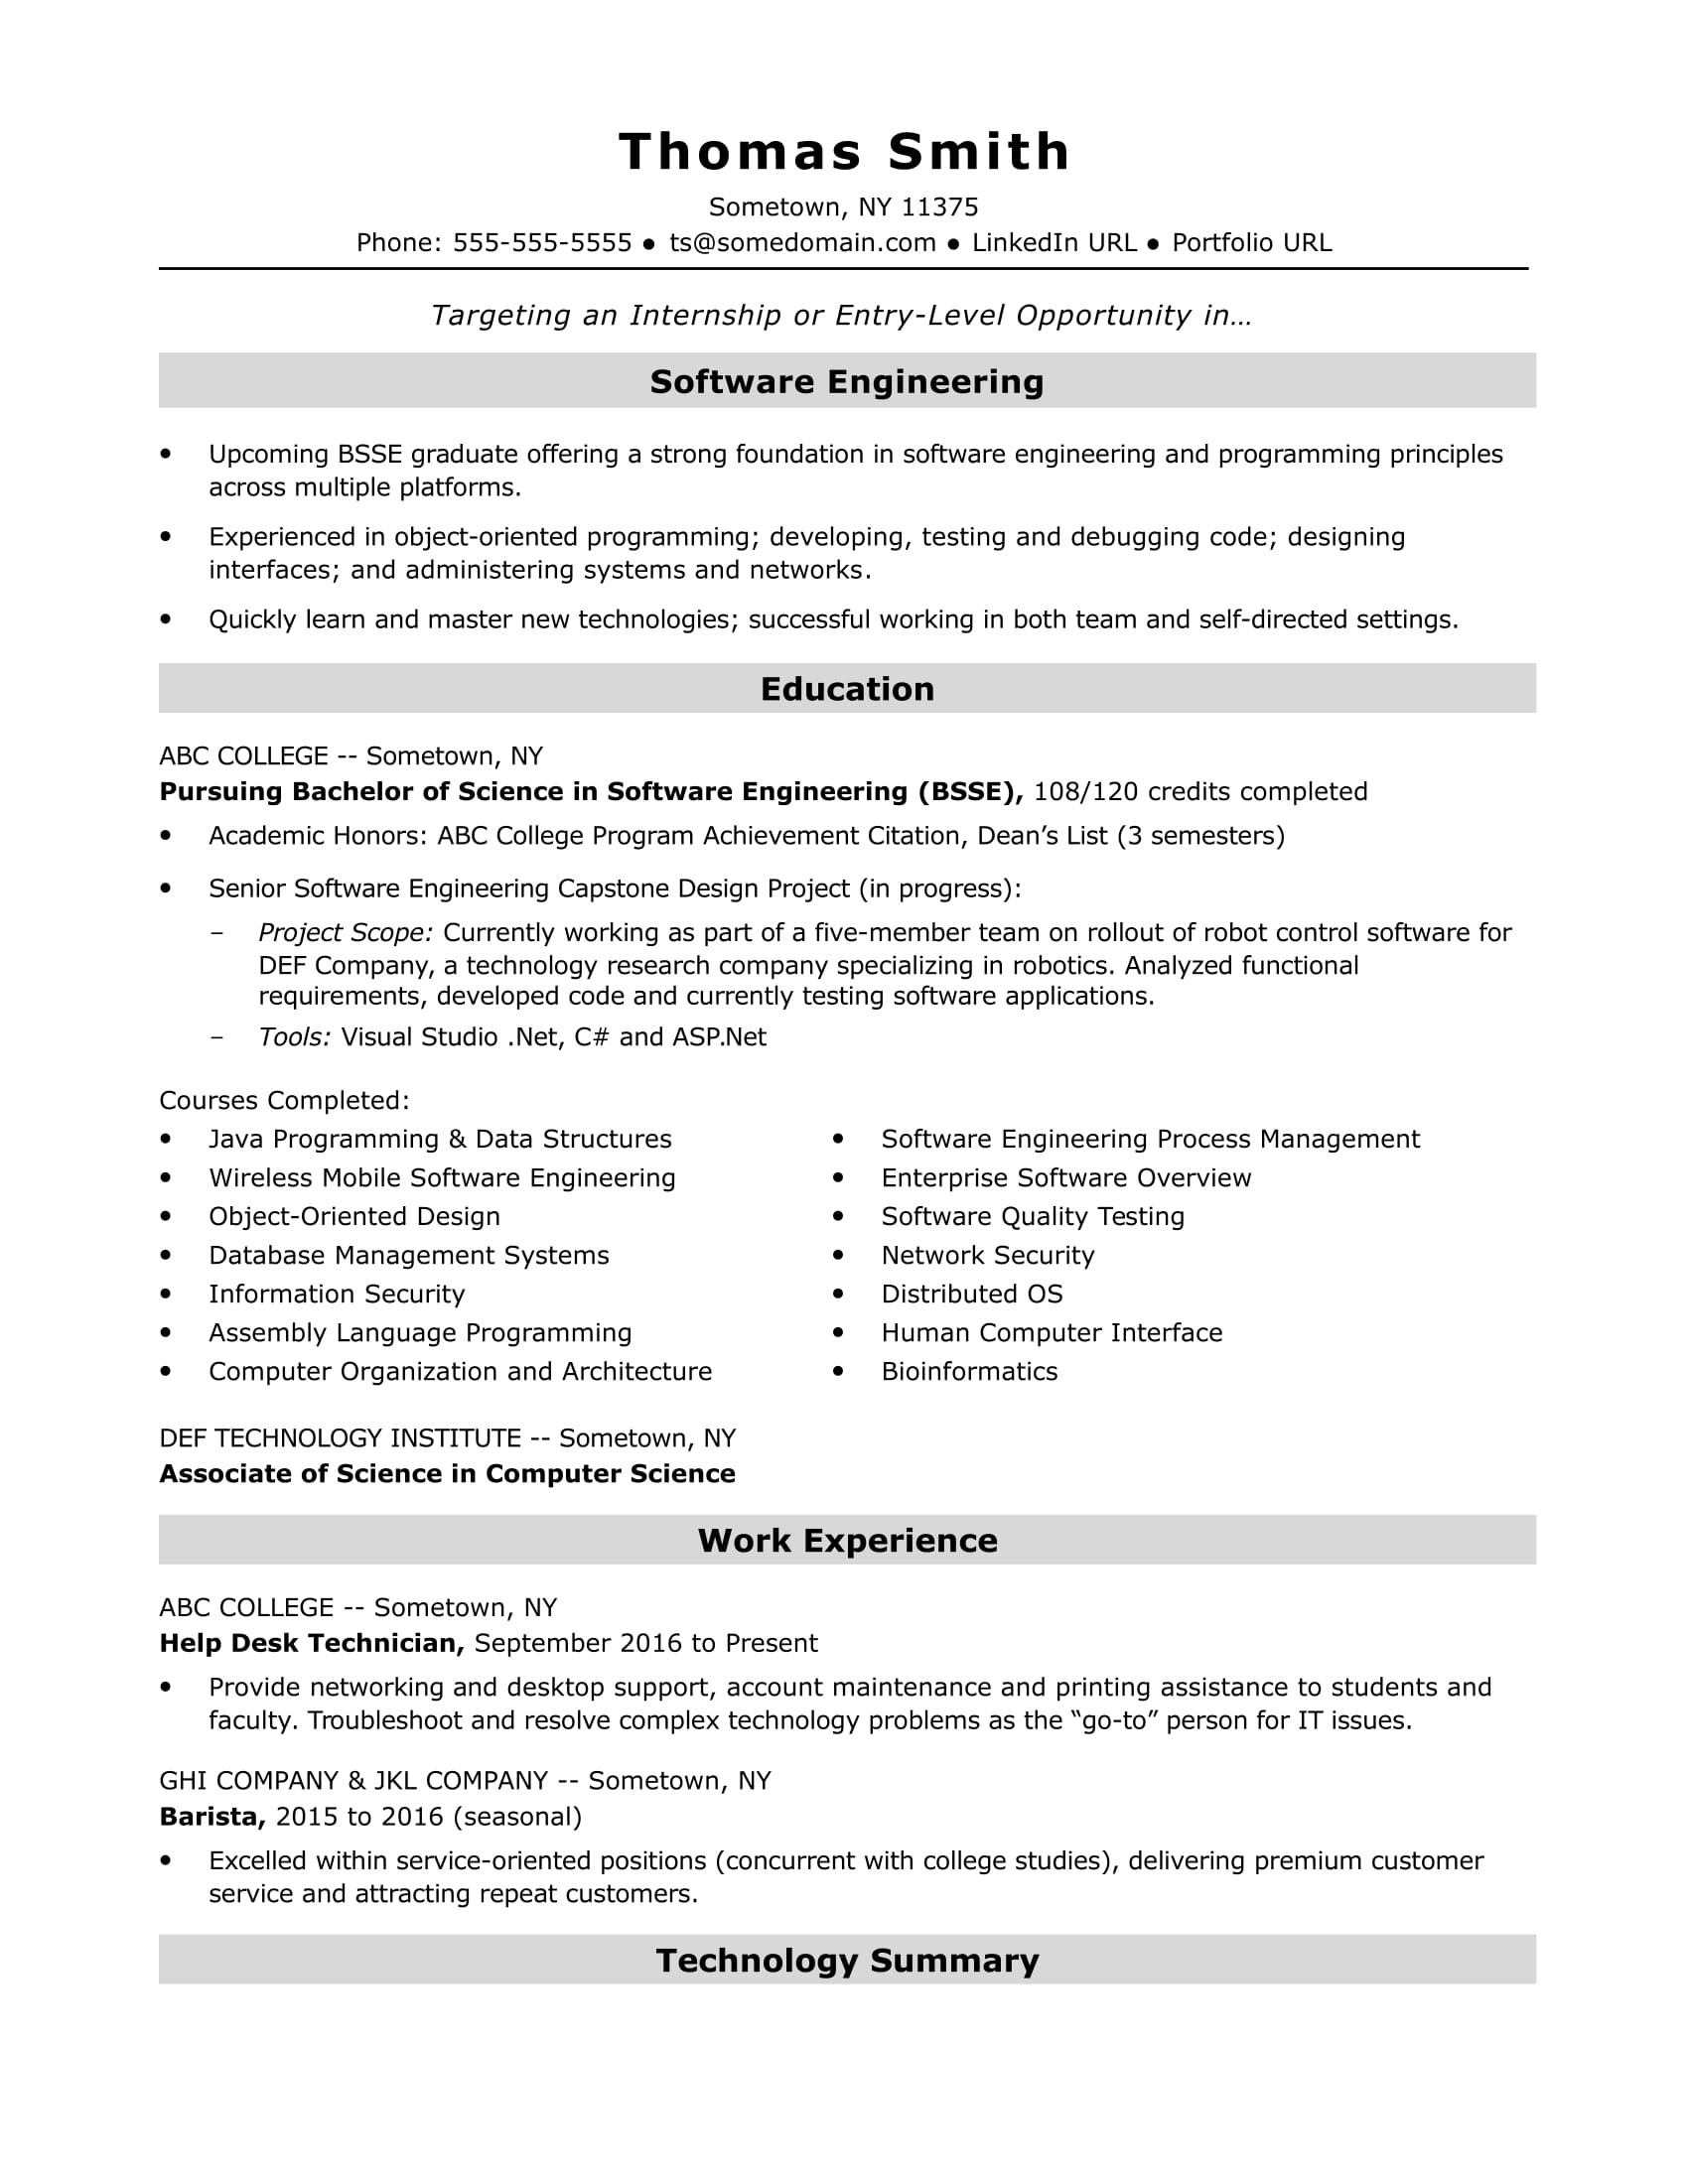 Sample Resume From Internatona Student for Entry Level Jobs Entry-level software Engineer Resume Sample Monster.com